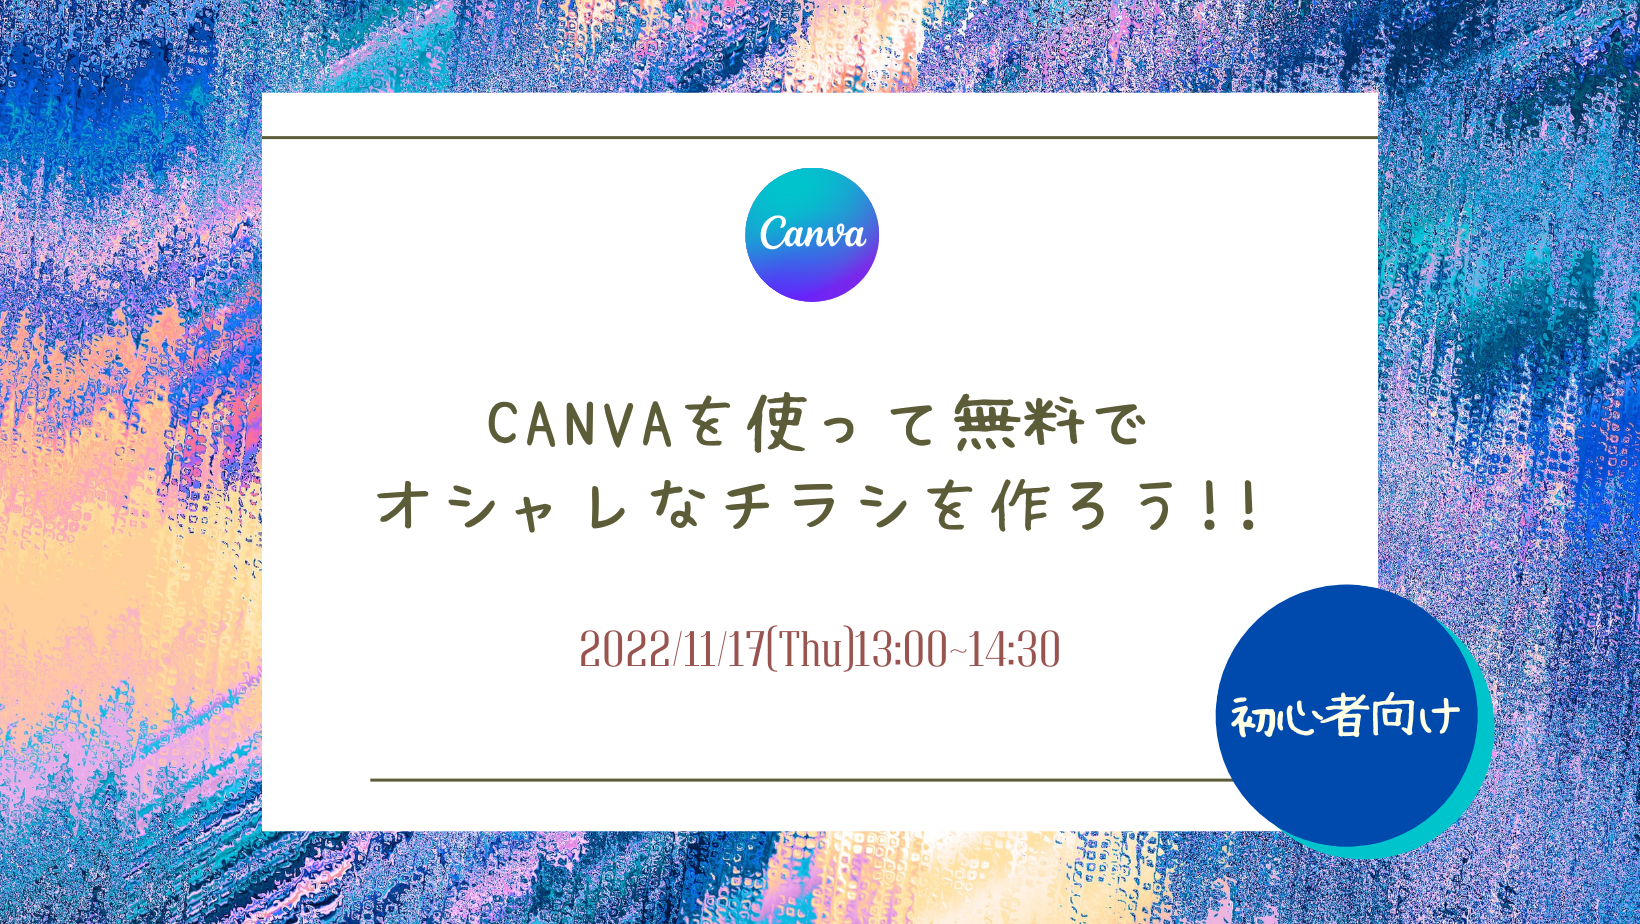 11/17　【初心者向け】 Canvaを使って無料でオシャレなチラシを作ろう!!